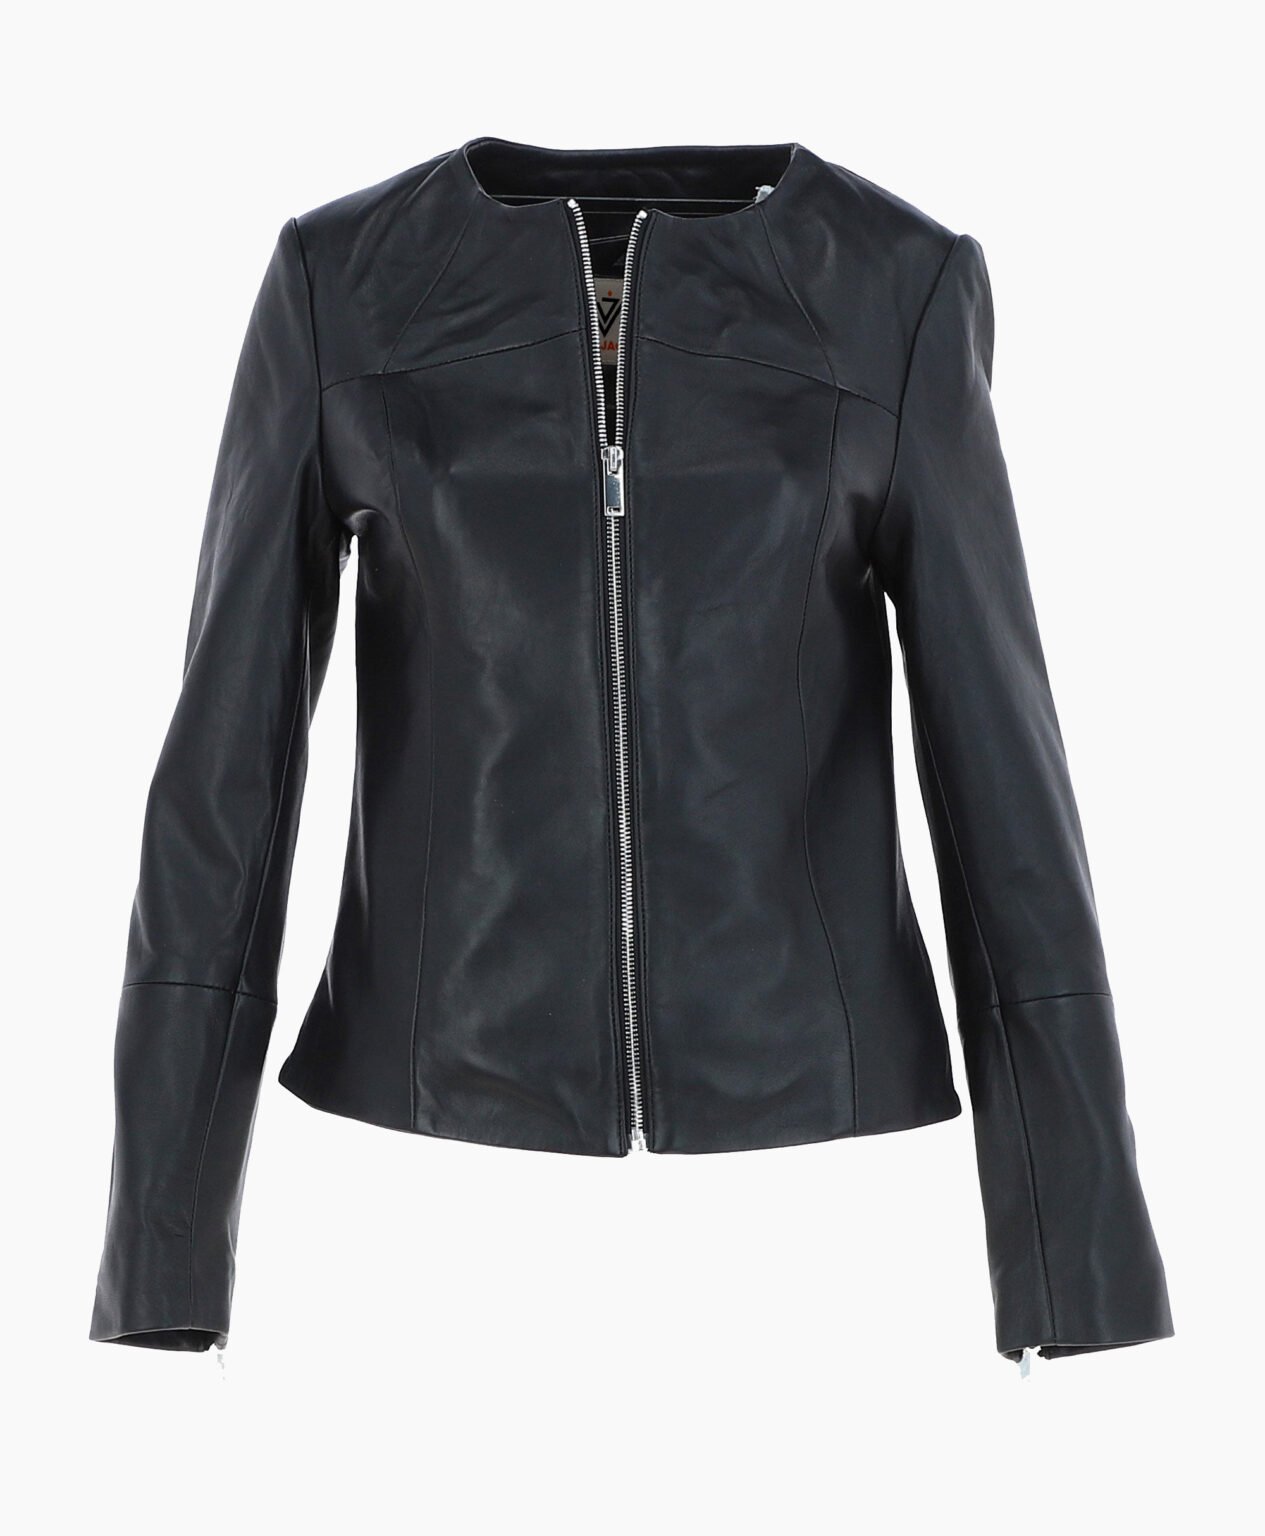 vogue-jacket-leather-fashion-jacket-black-elizabeth-image200